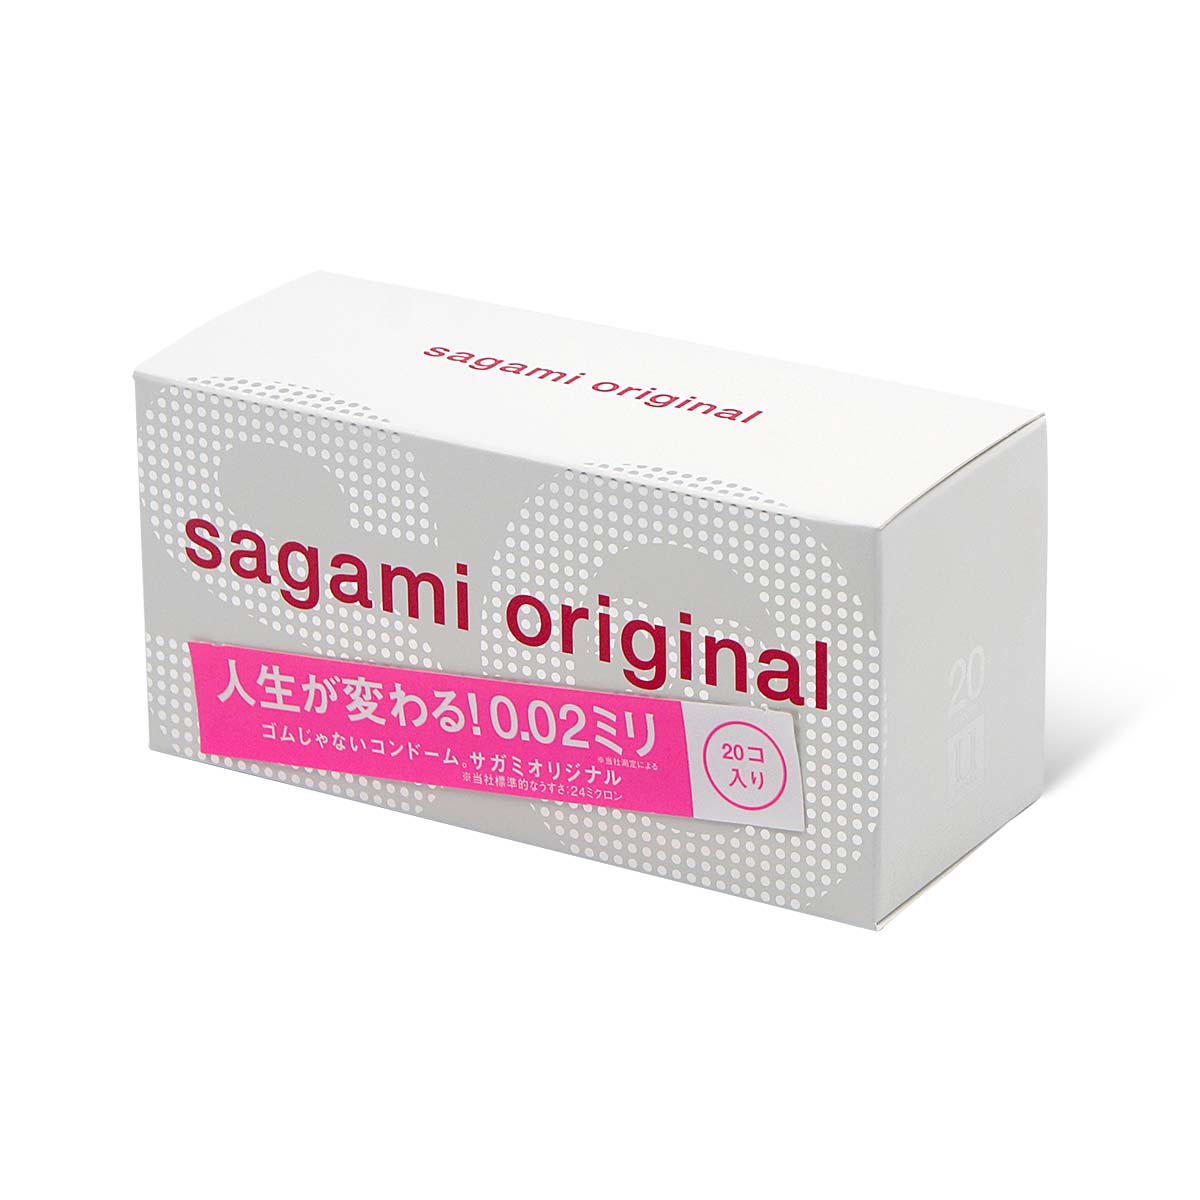 Sagami 相模原創 0.02 (第二代) 20 片裝 PU 安全套